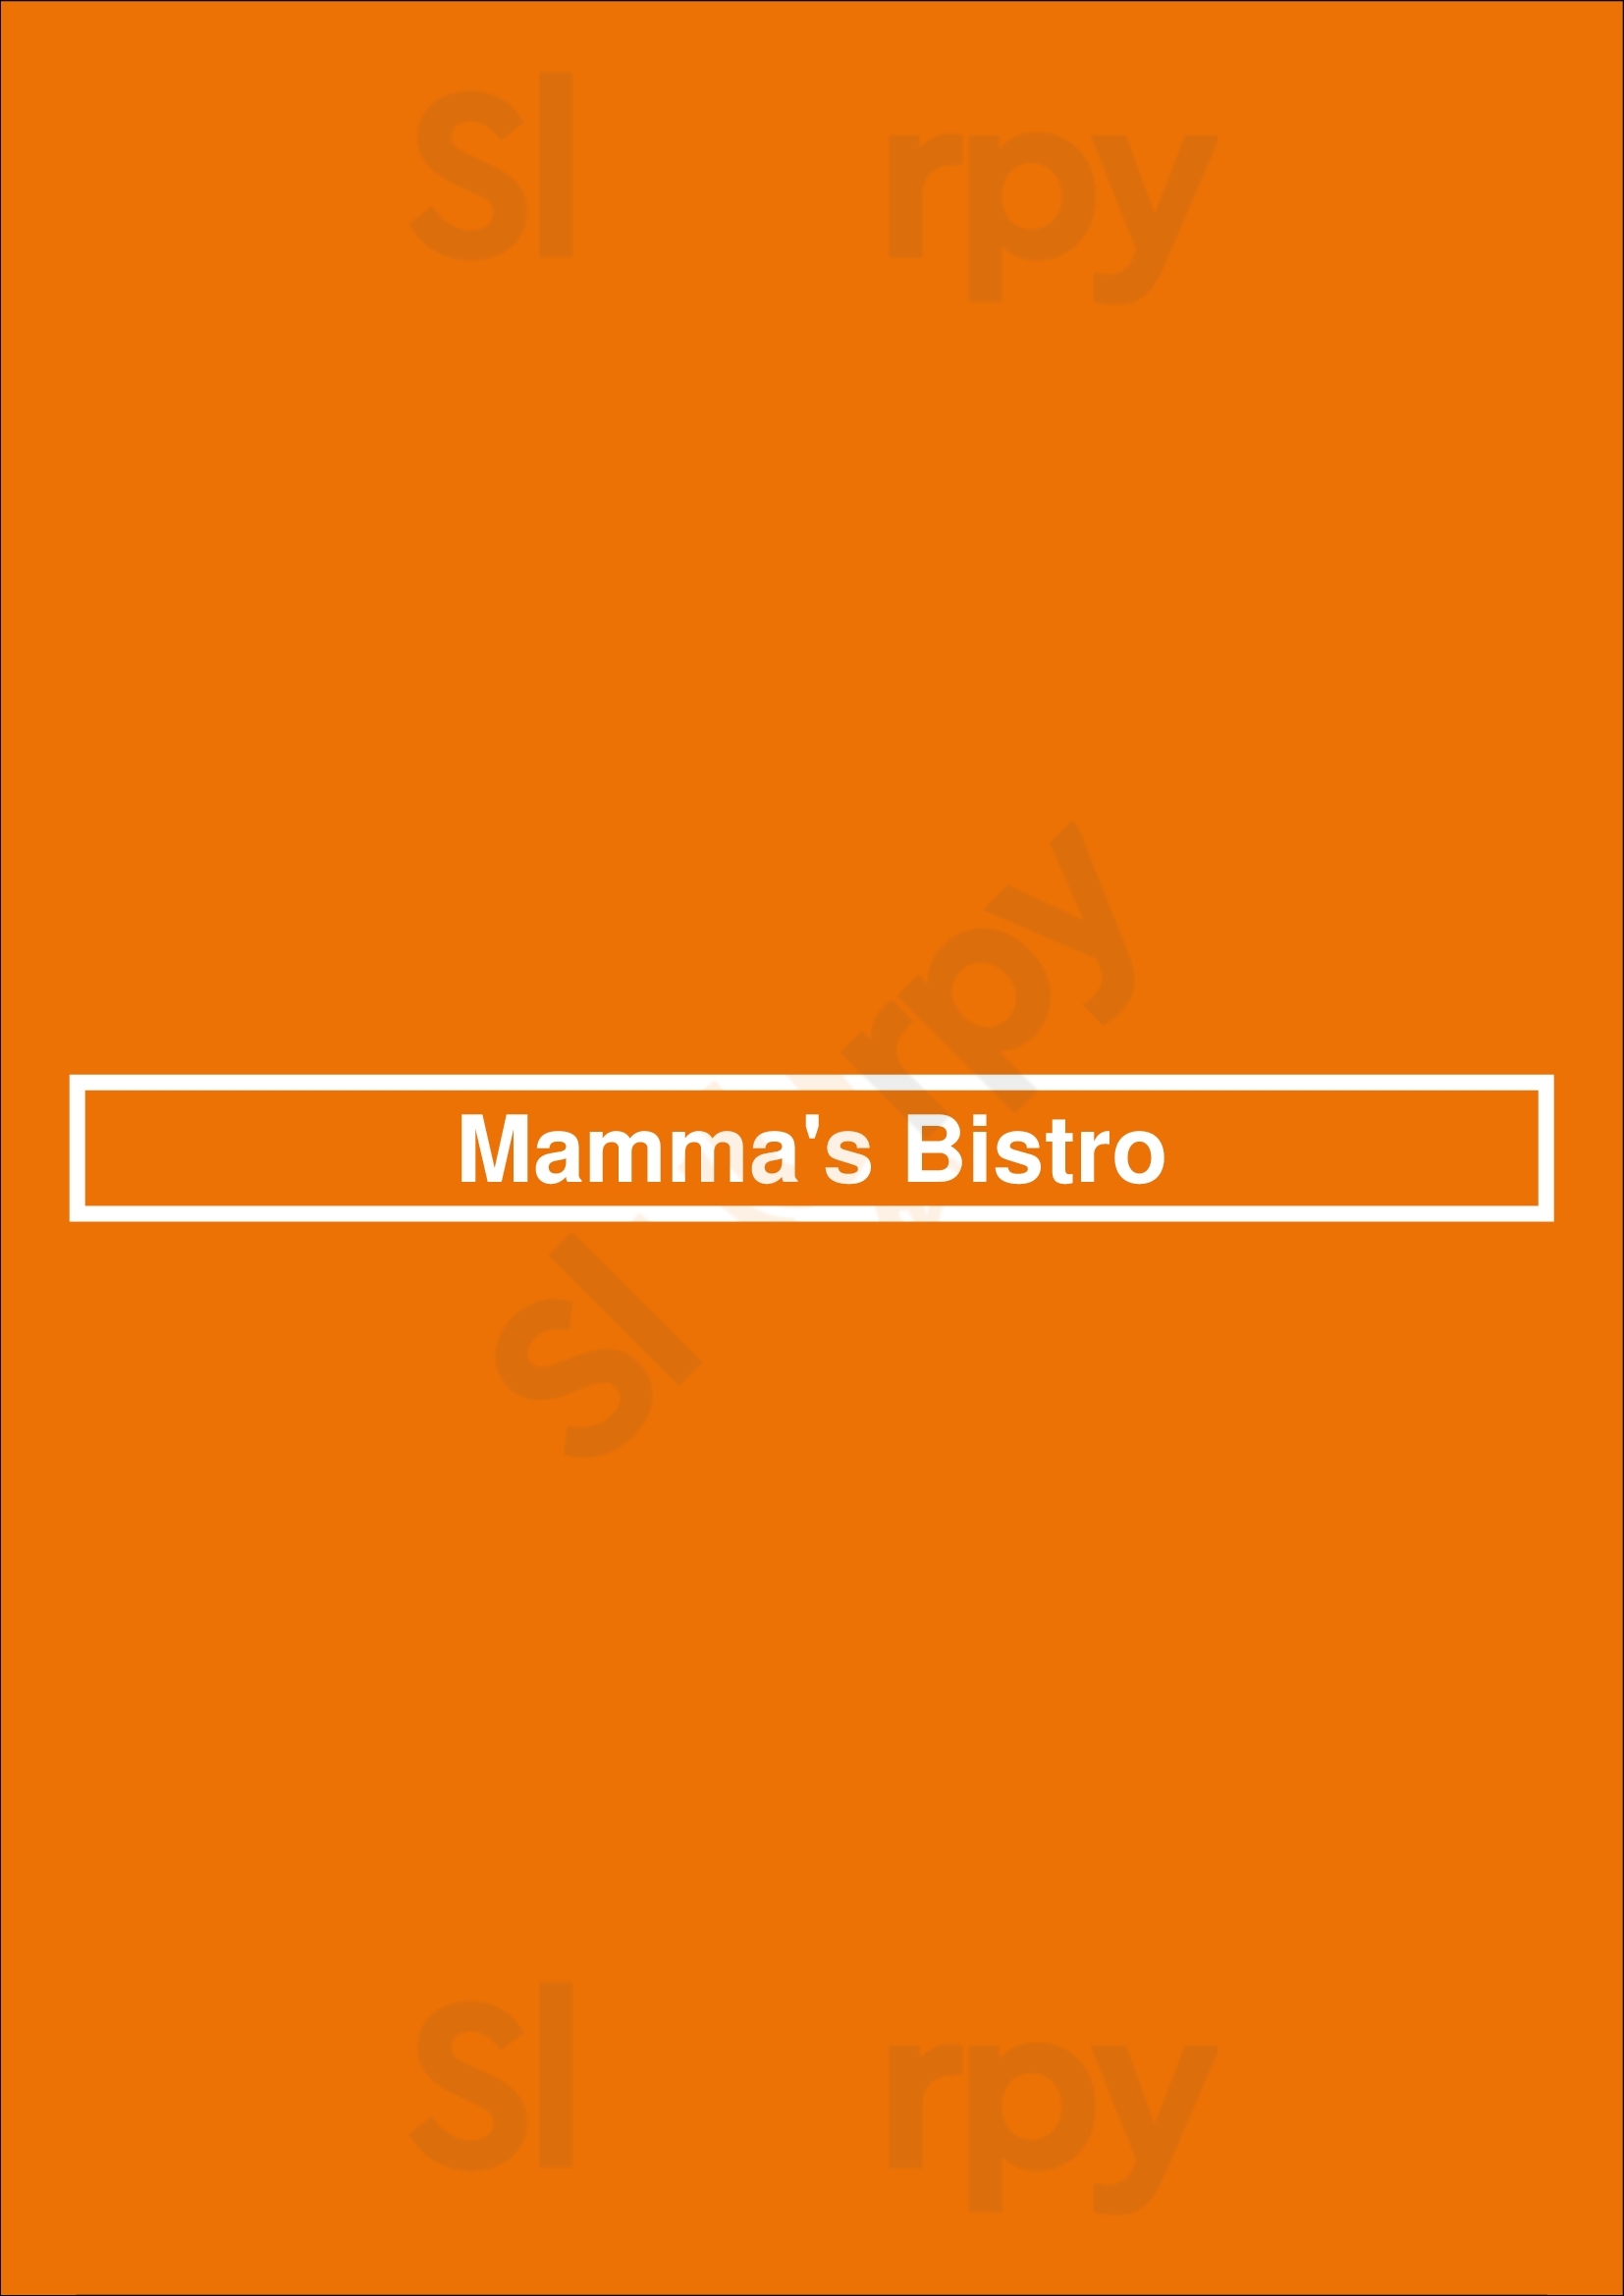 Mamma's Bistro Perth Menu - 1